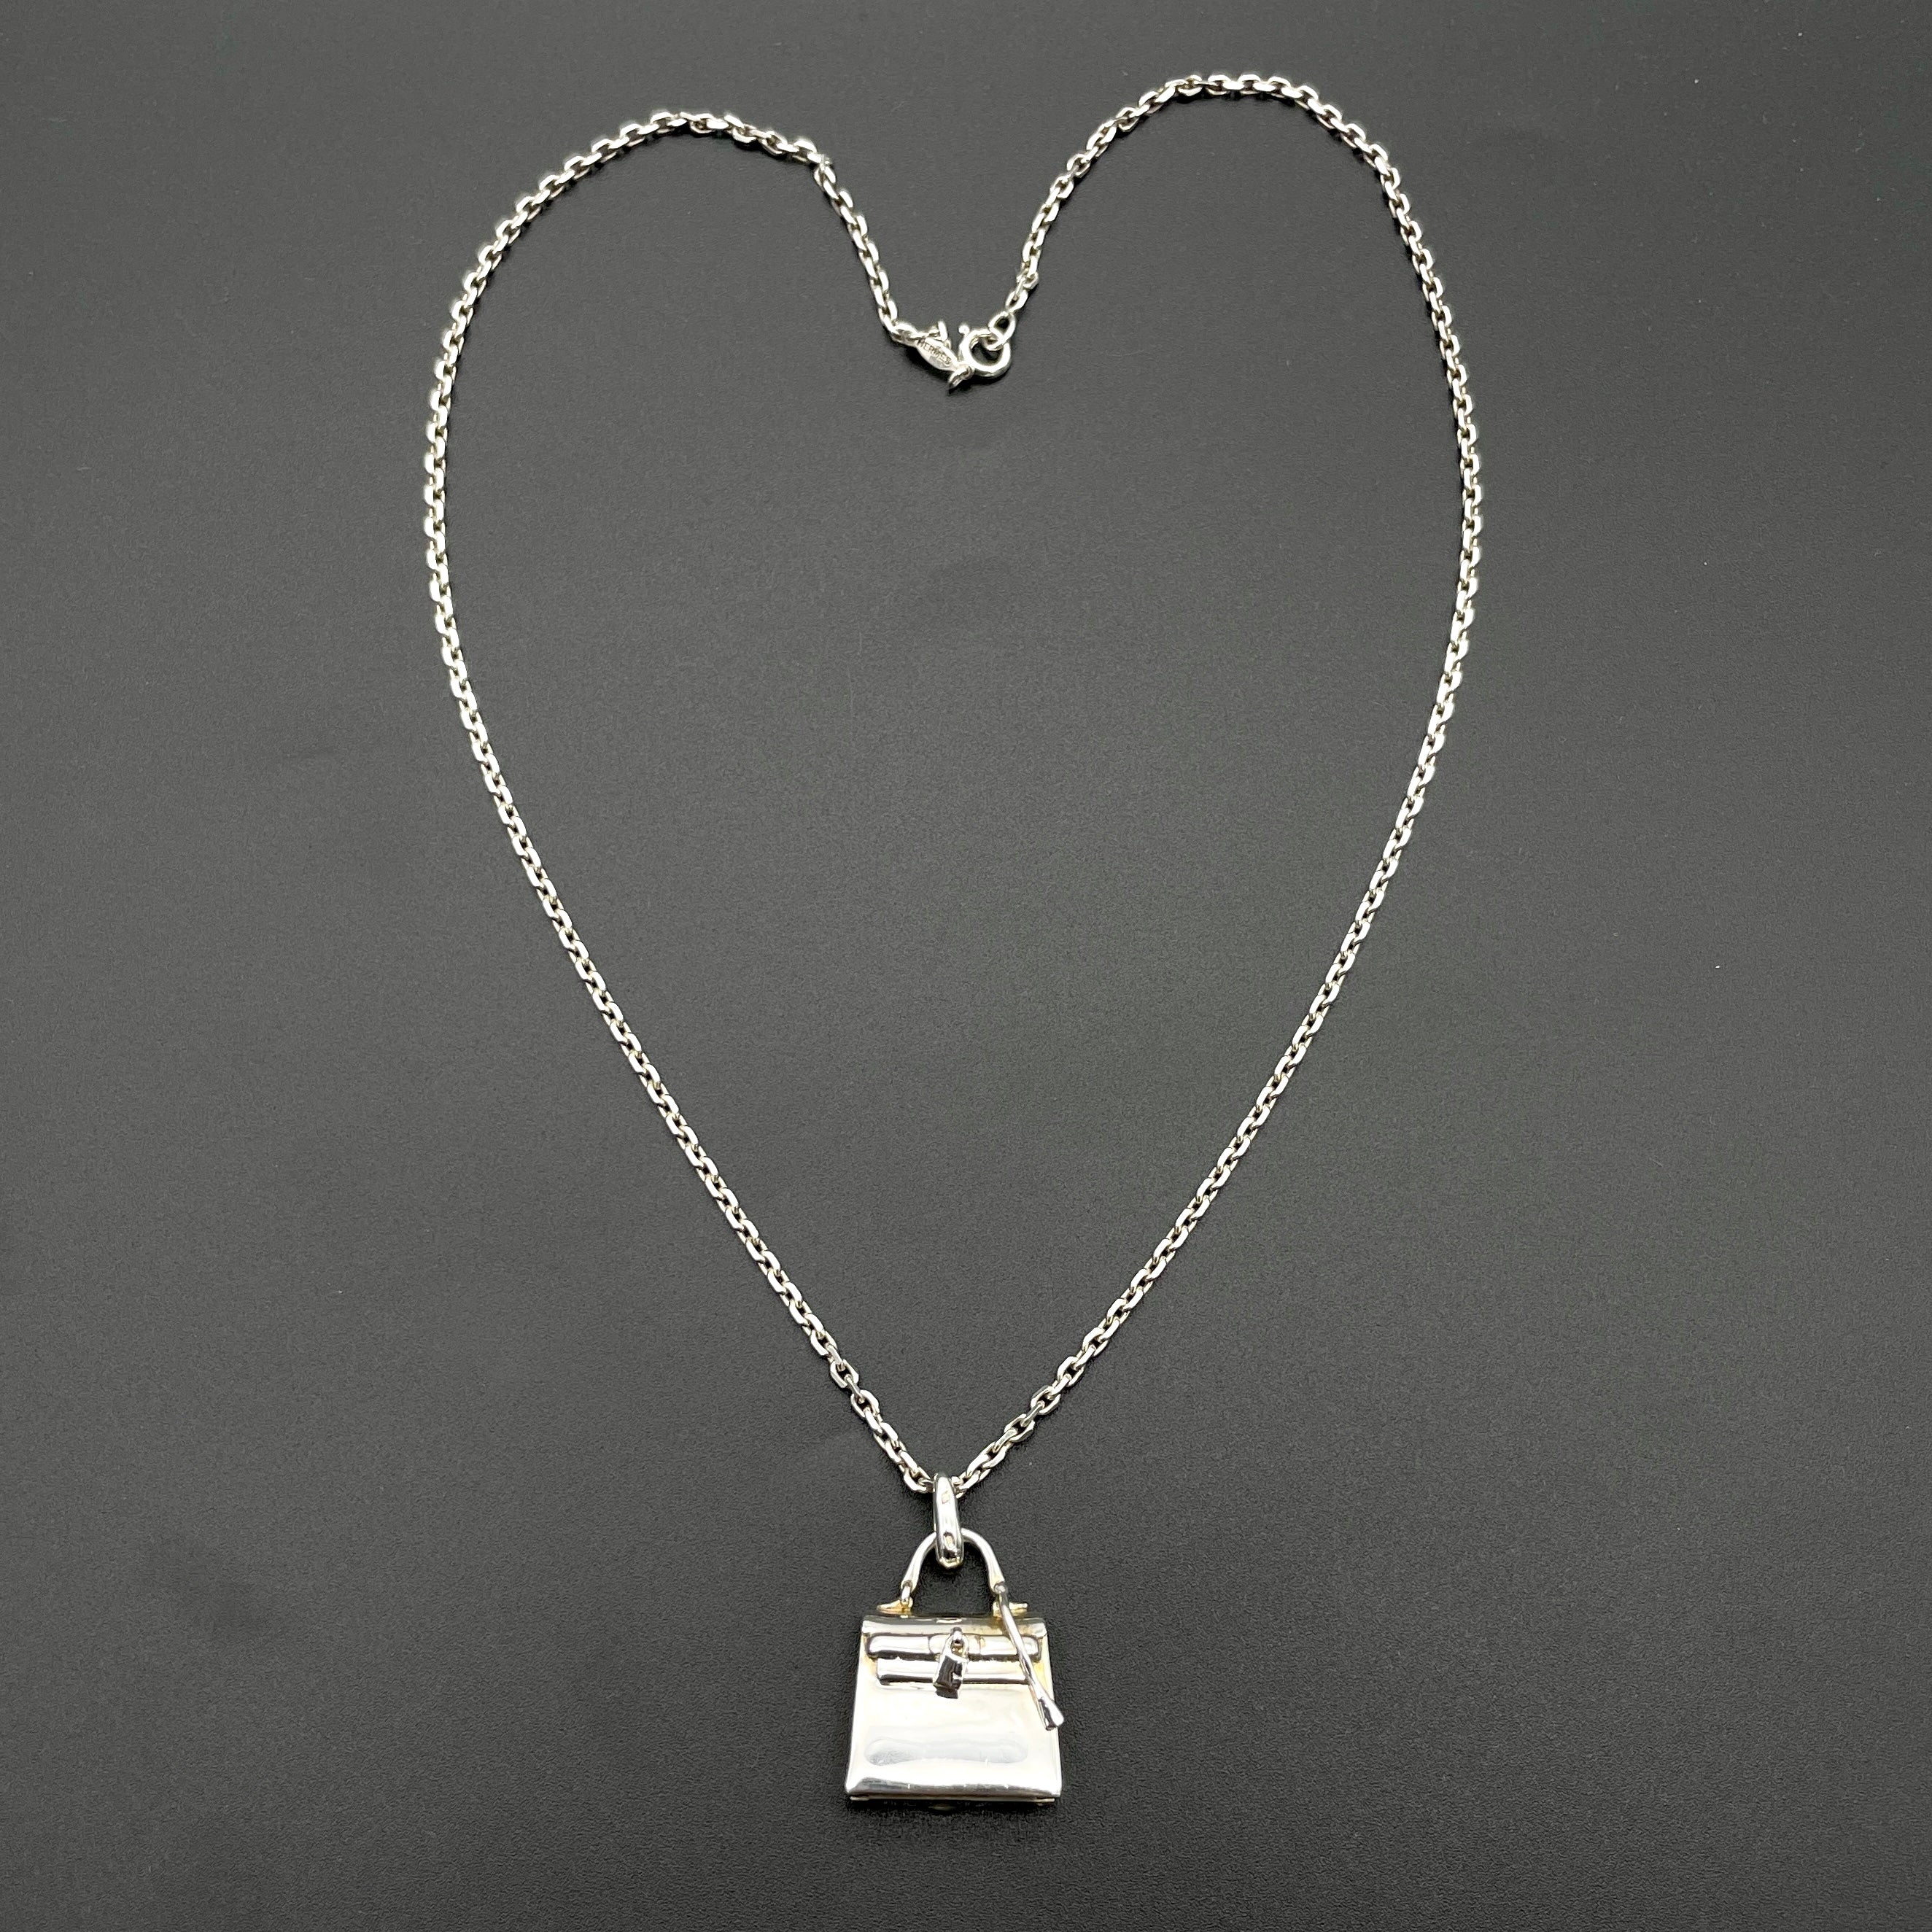 Afar Vintage Pre-owned HERMES Hermes Kelly bag pendant necklace